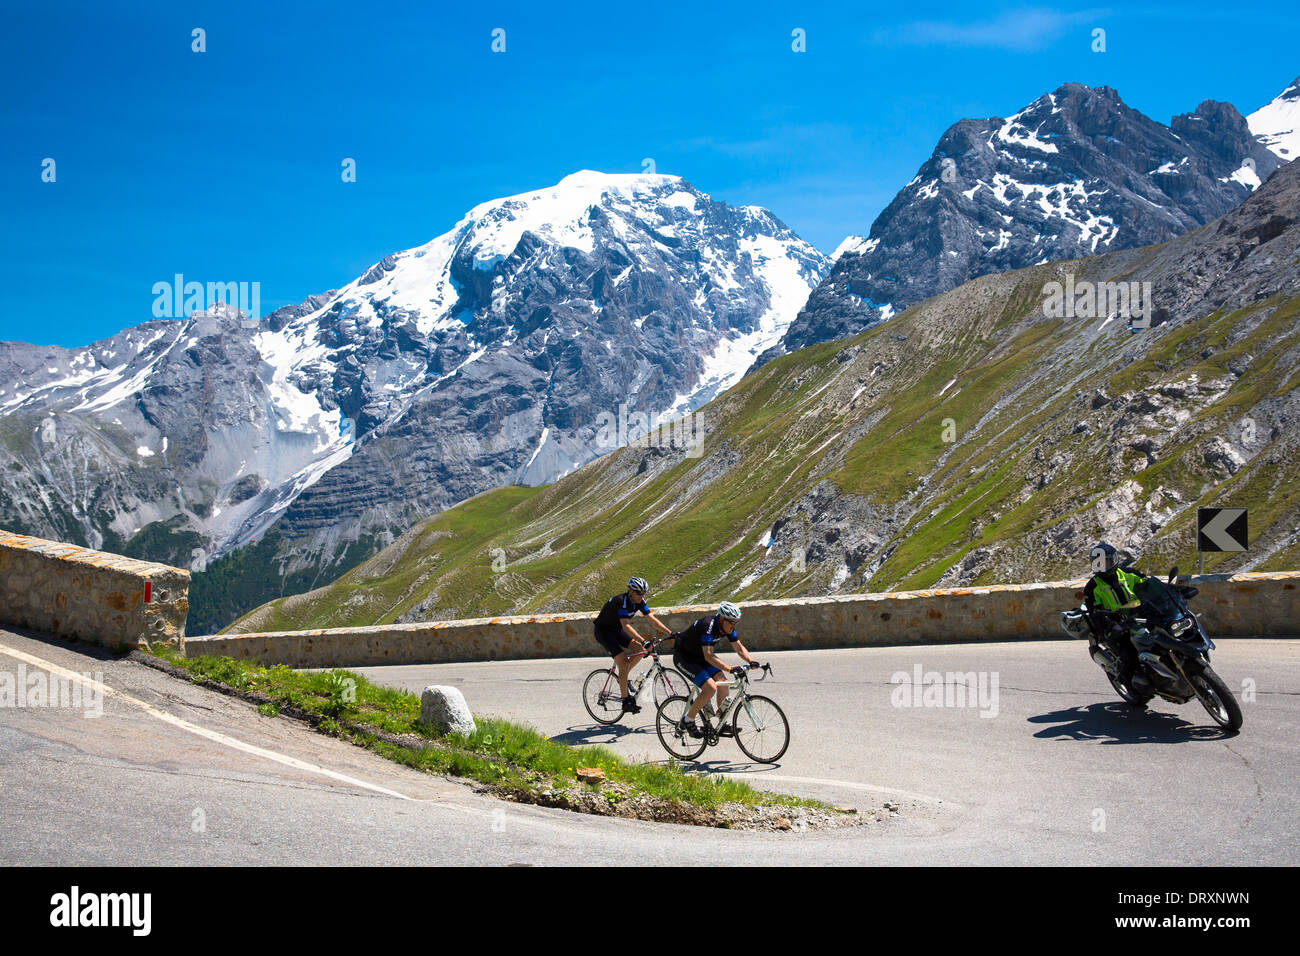 Radfahrer fahren Roadbikes hinter Motorrad bergauf auf der Stelvio Pass,  Passo Dello Stelvio, Stilfser Joch, in den Alpen, Italien Stockfotografie -  Alamy